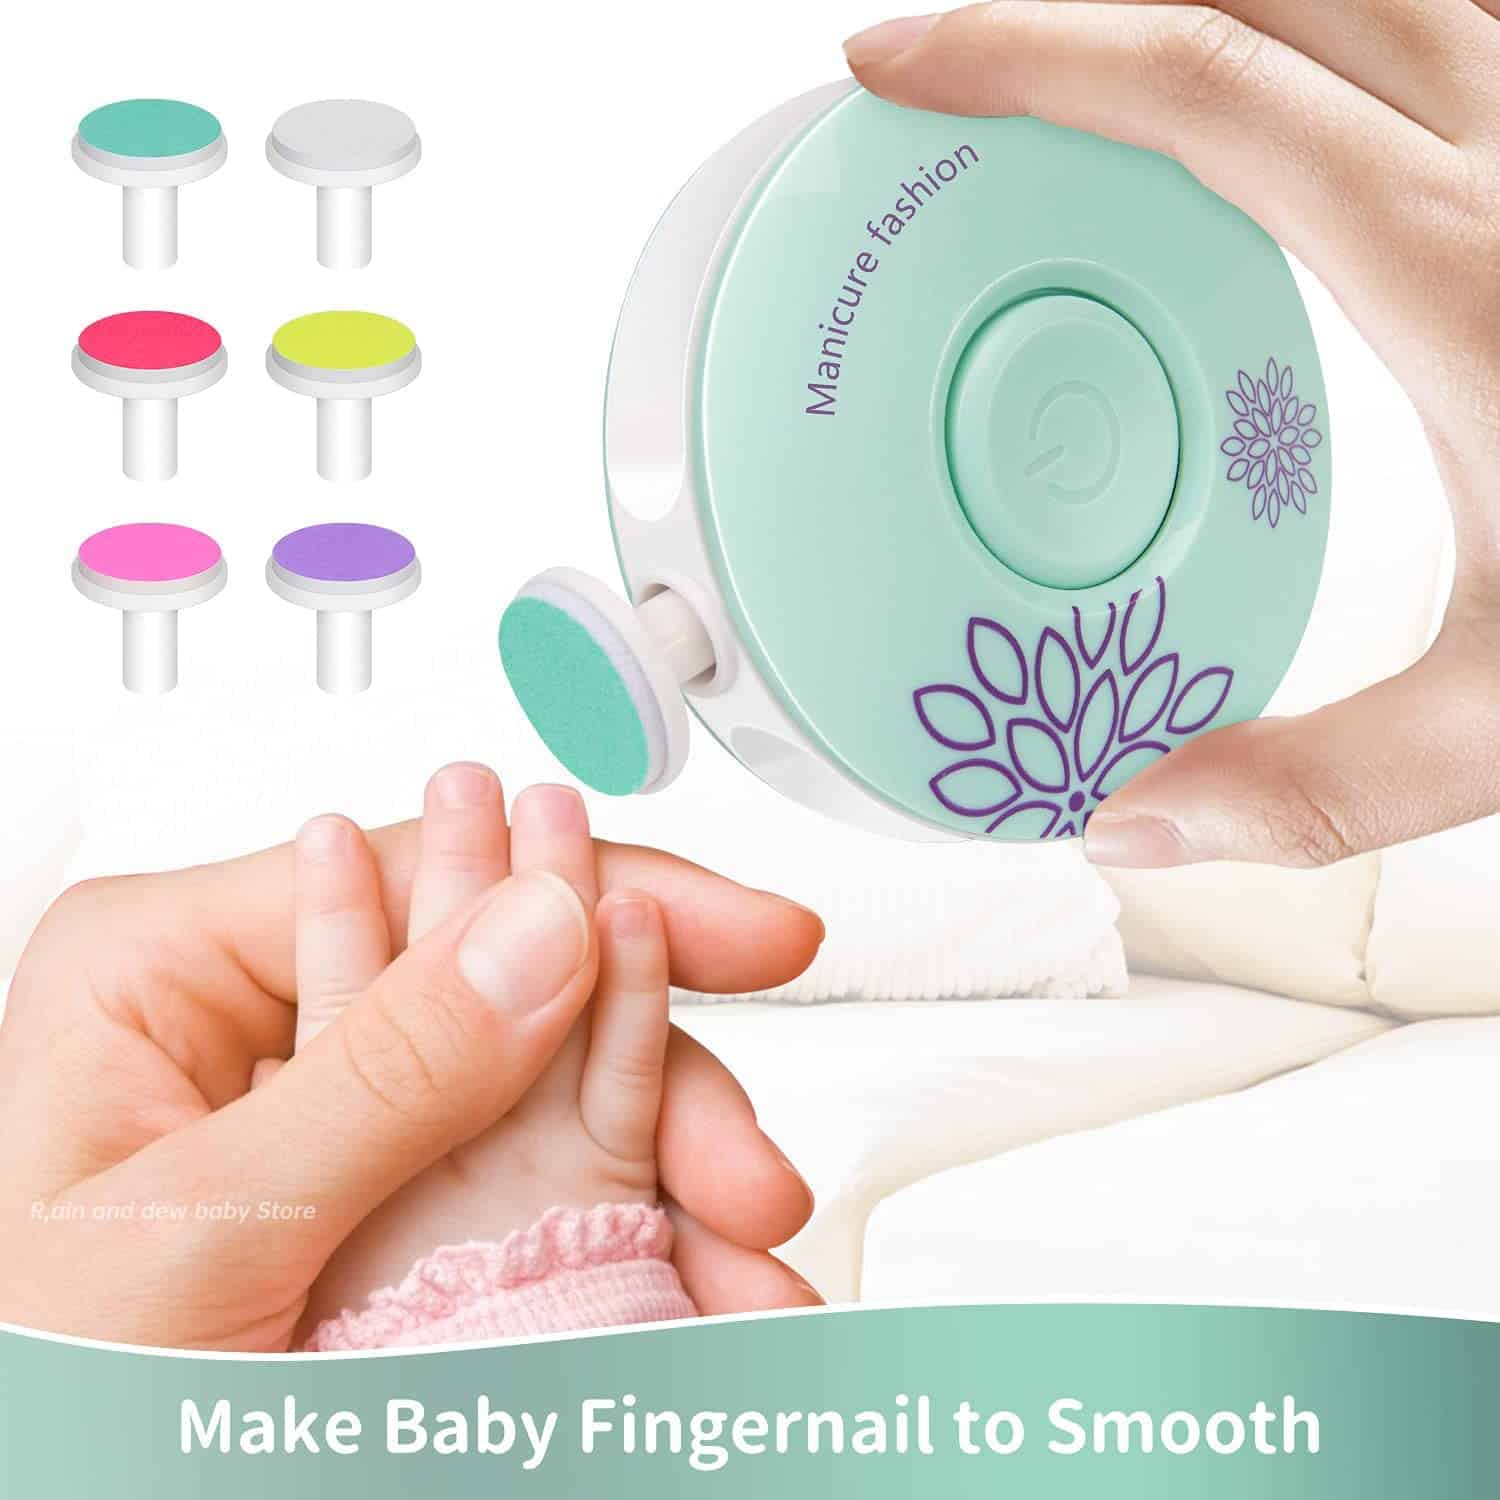 משייף ציפורניים החשמלי ידידותי נראה ממש כמו צעצוע חביב יעזור ויקל על פעולת גיזום הציפורניים עם התינוק שלך.